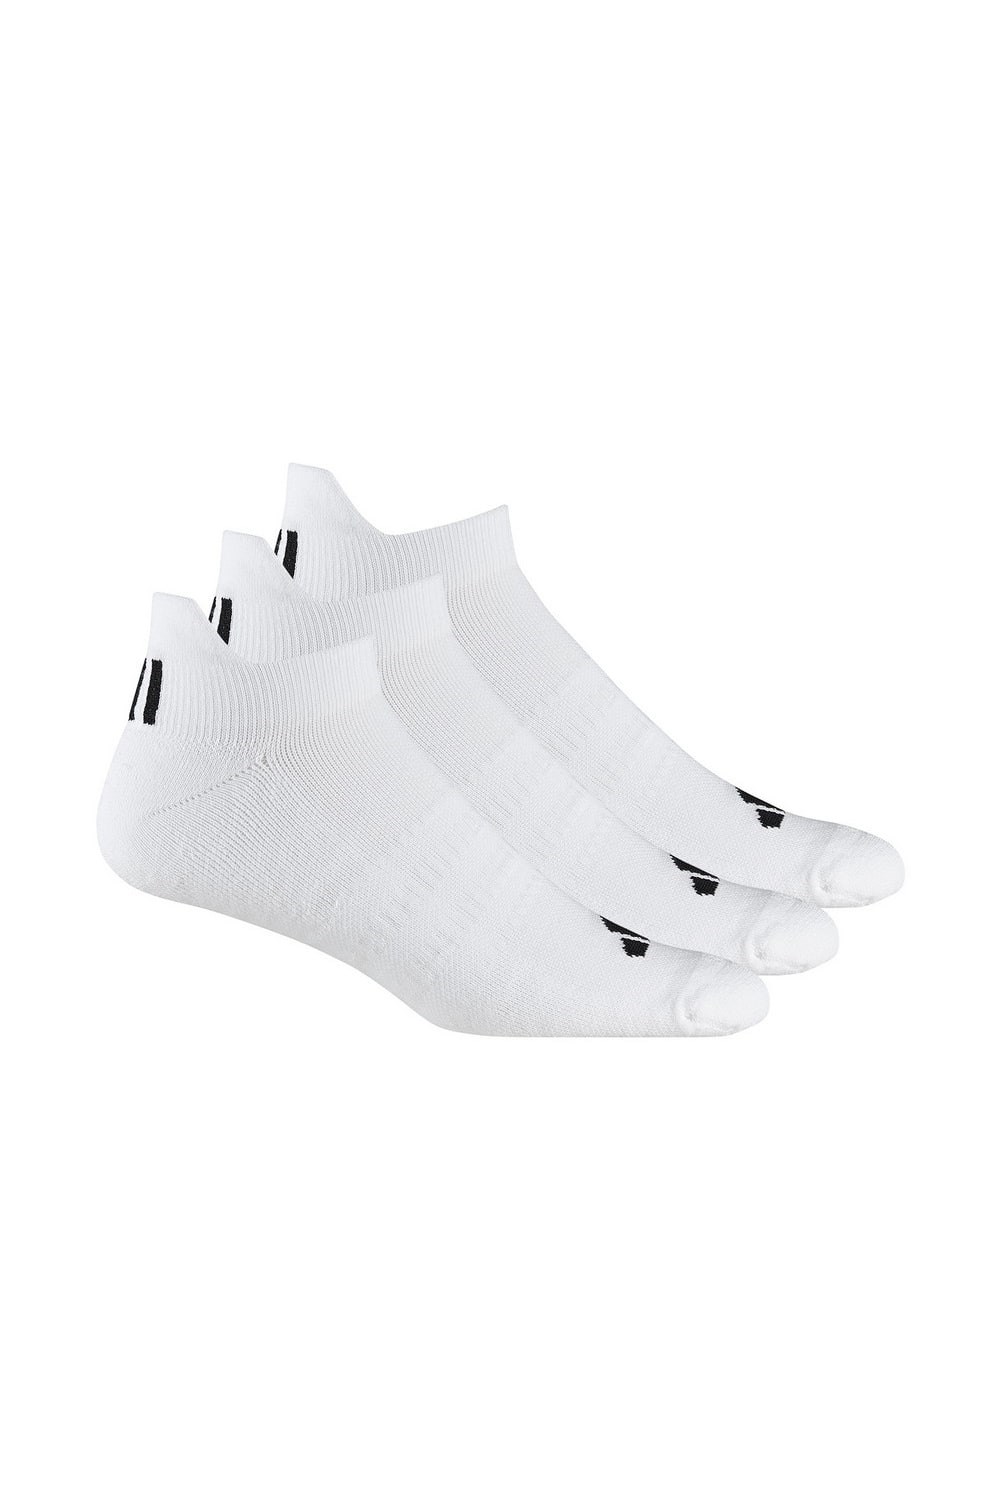 Mens Ankle Socks (Pack of 3) -